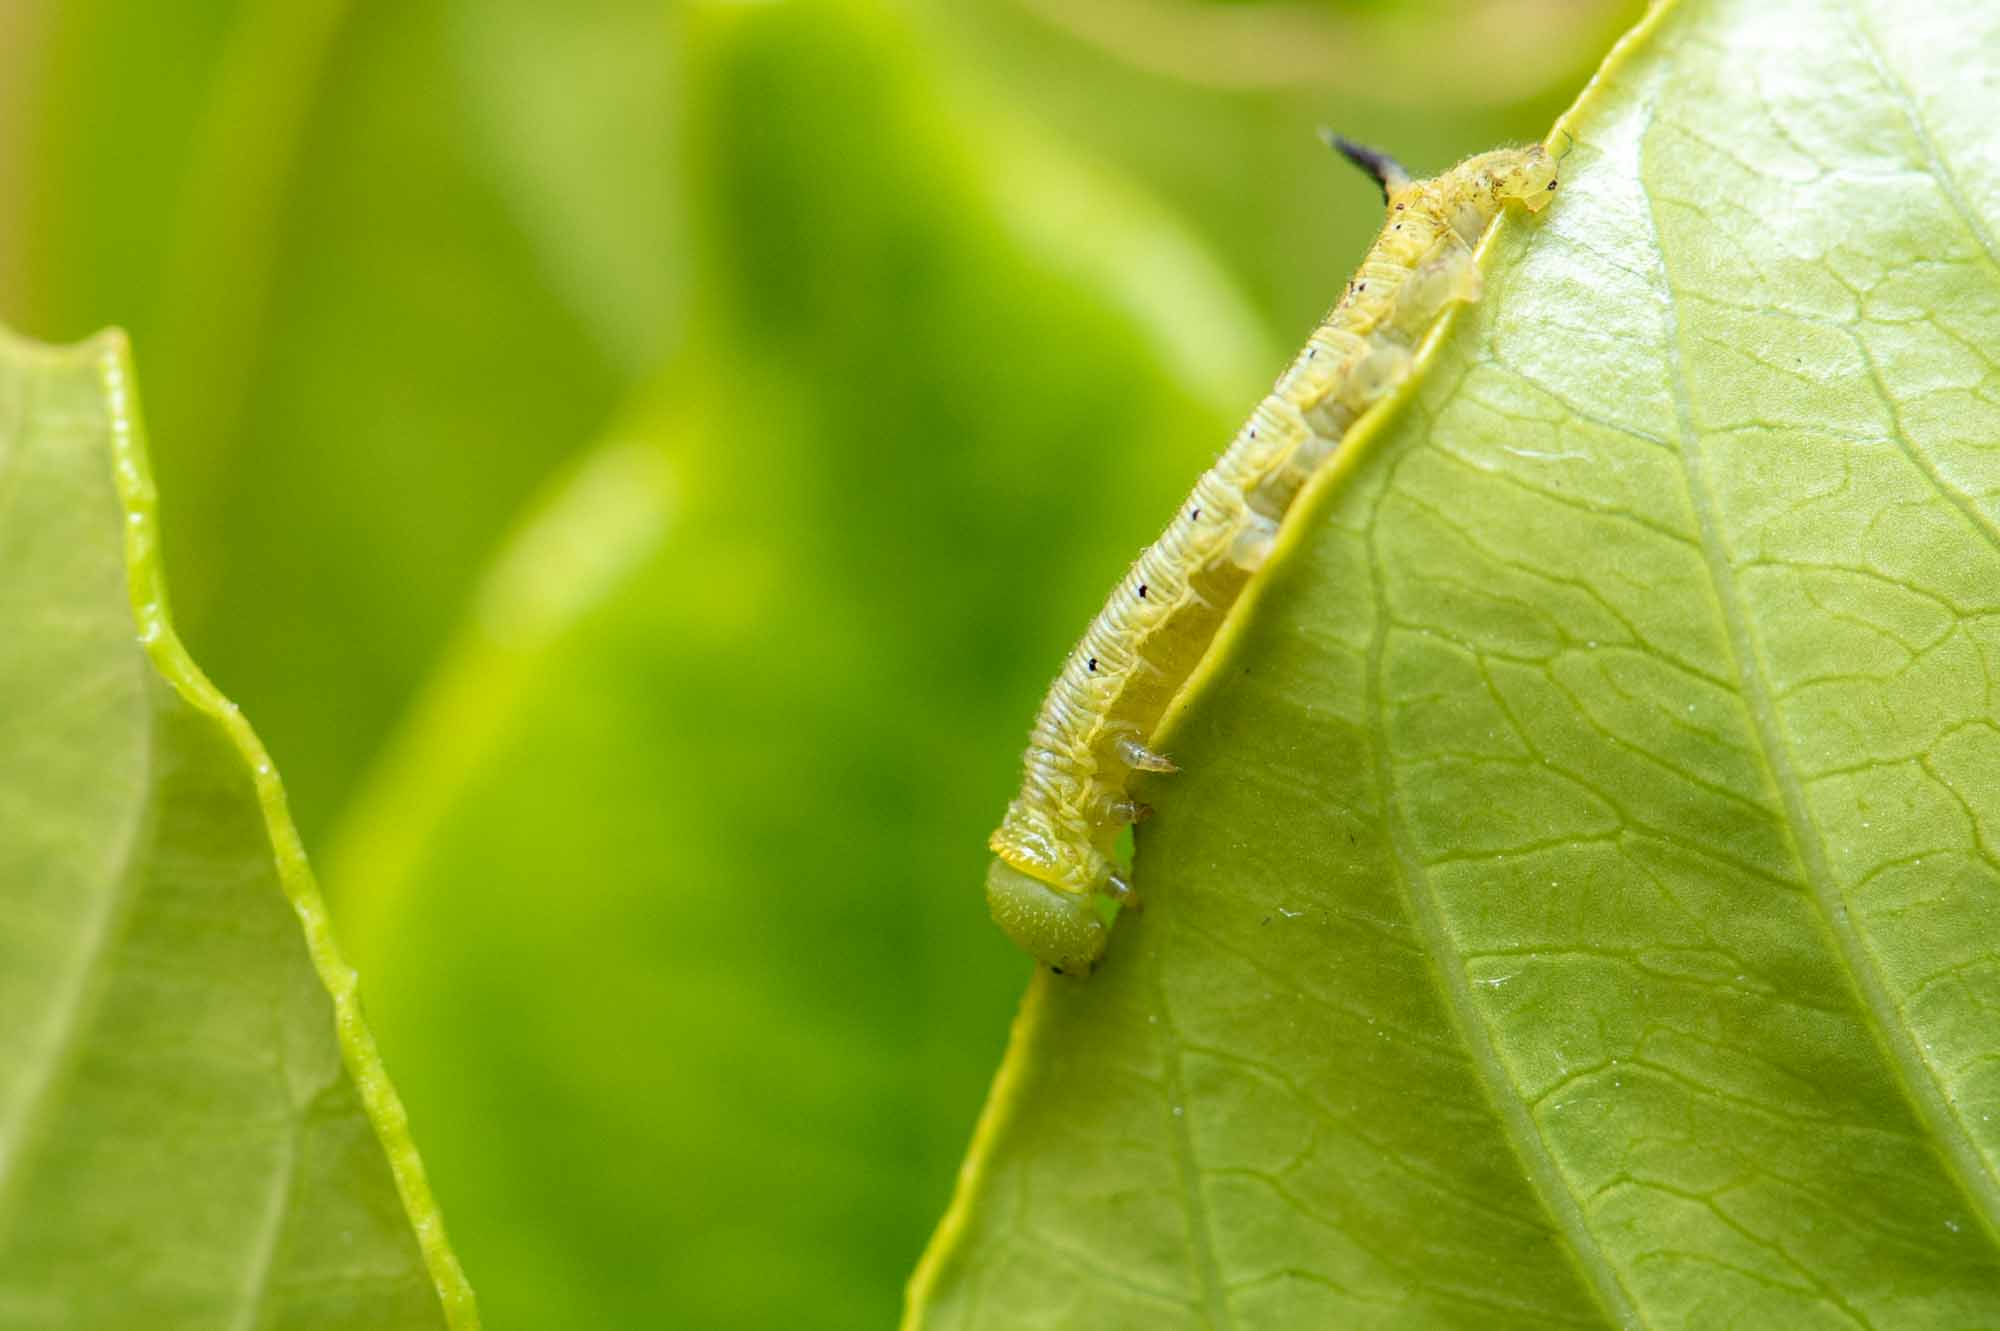 オオスカシバの特徴や成長 卵 幼虫 蛹 の様子も写真で紹介 虫の写真と生態なら昆虫写真図鑑 ムシミル